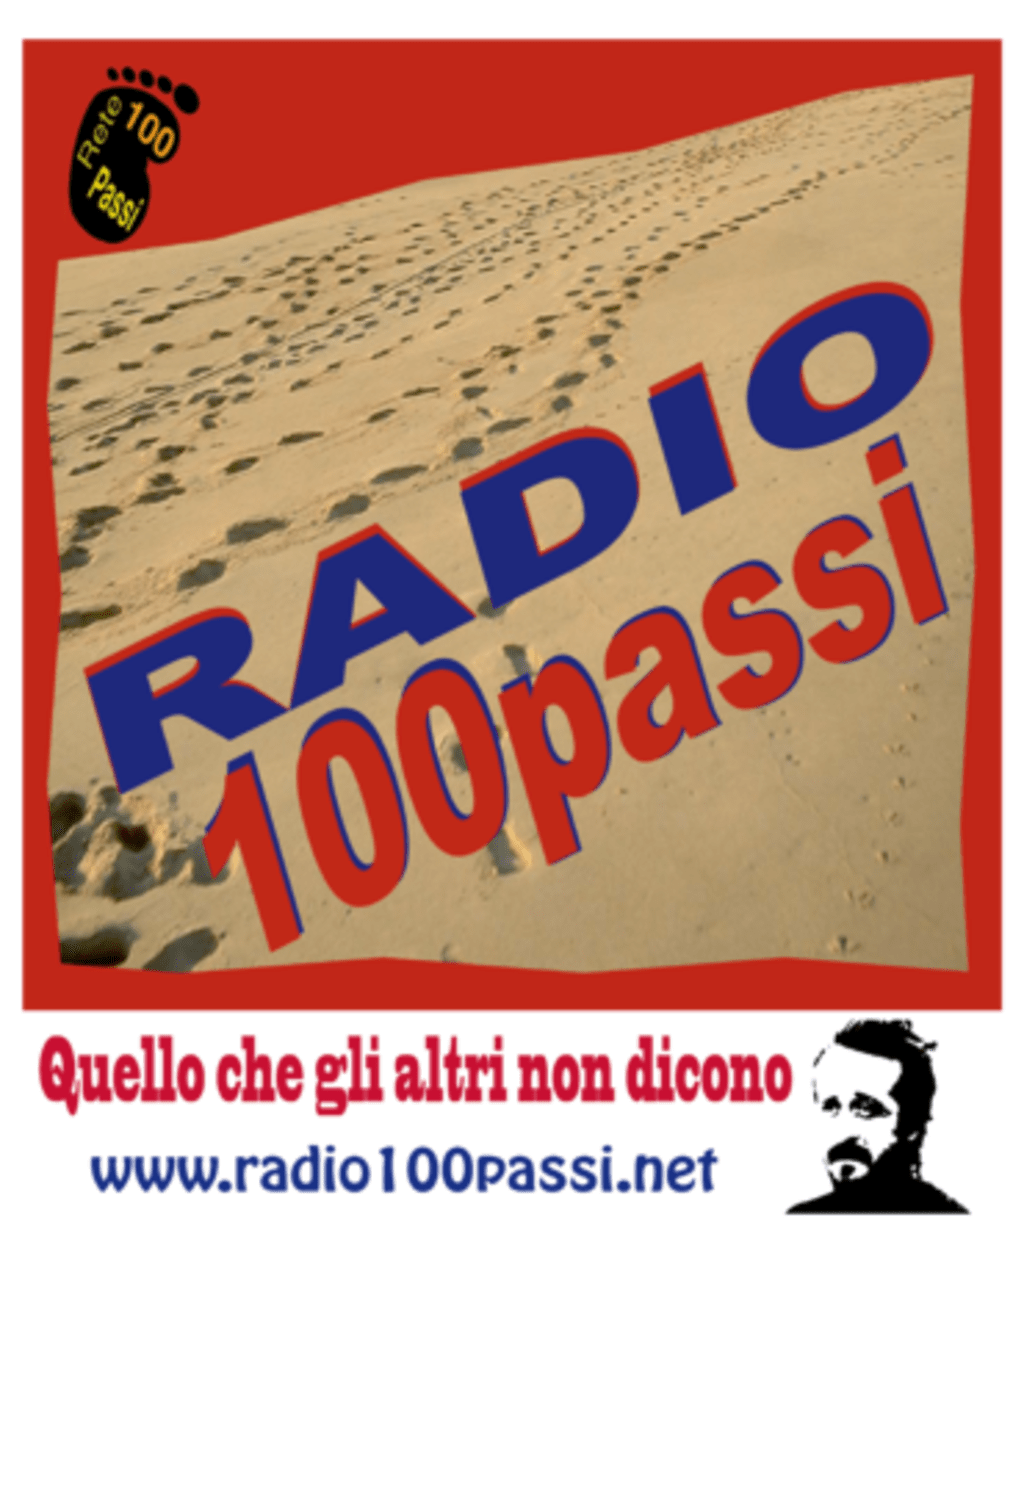 Radio 100 passi logo